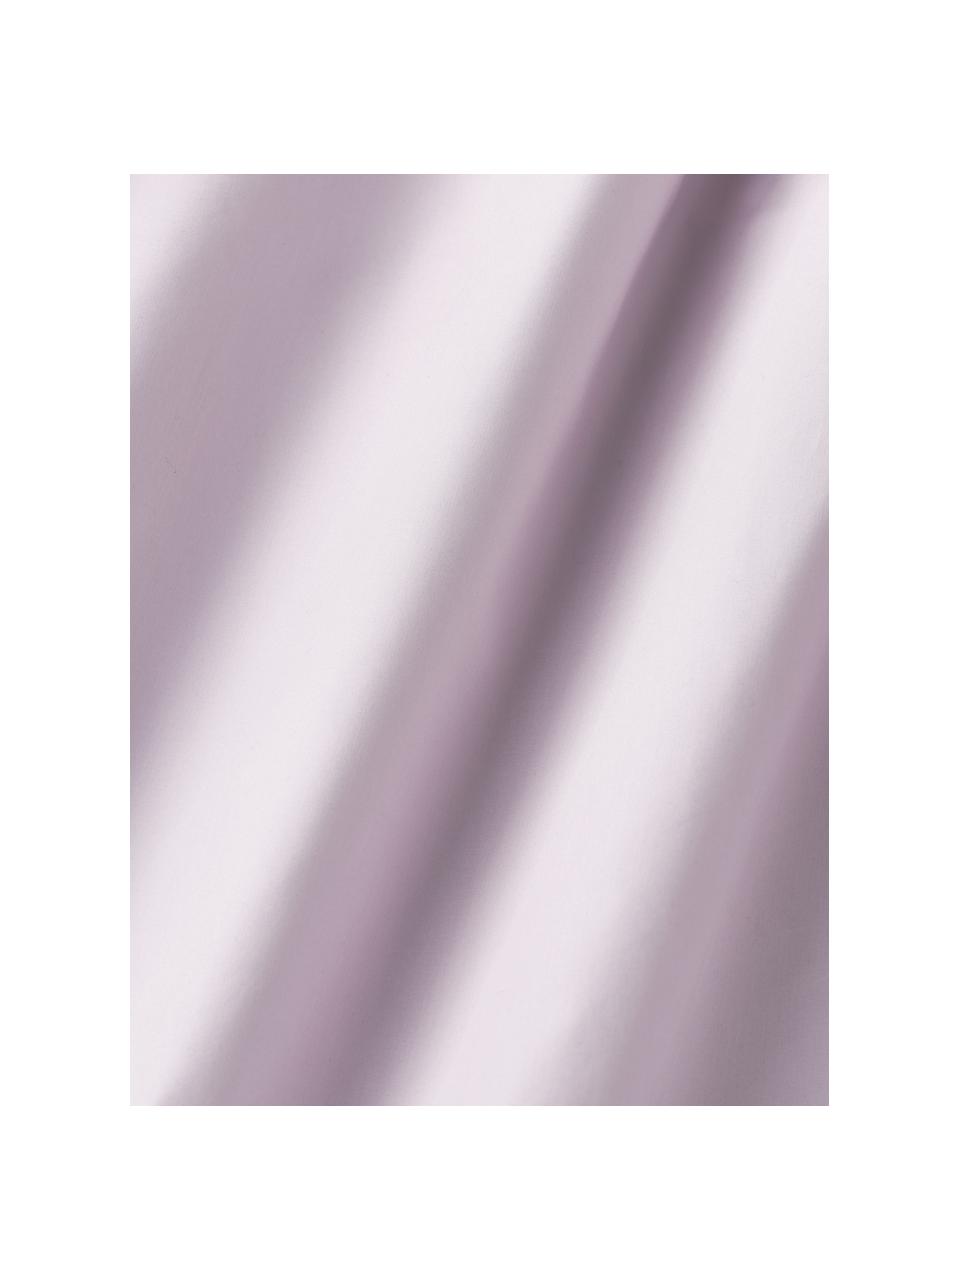 Topper-Spannbettlaken Elsie, Baumwollperkal, Webart: Perkal, Lavendel, B 90 x L 200 cm, H 15 cm